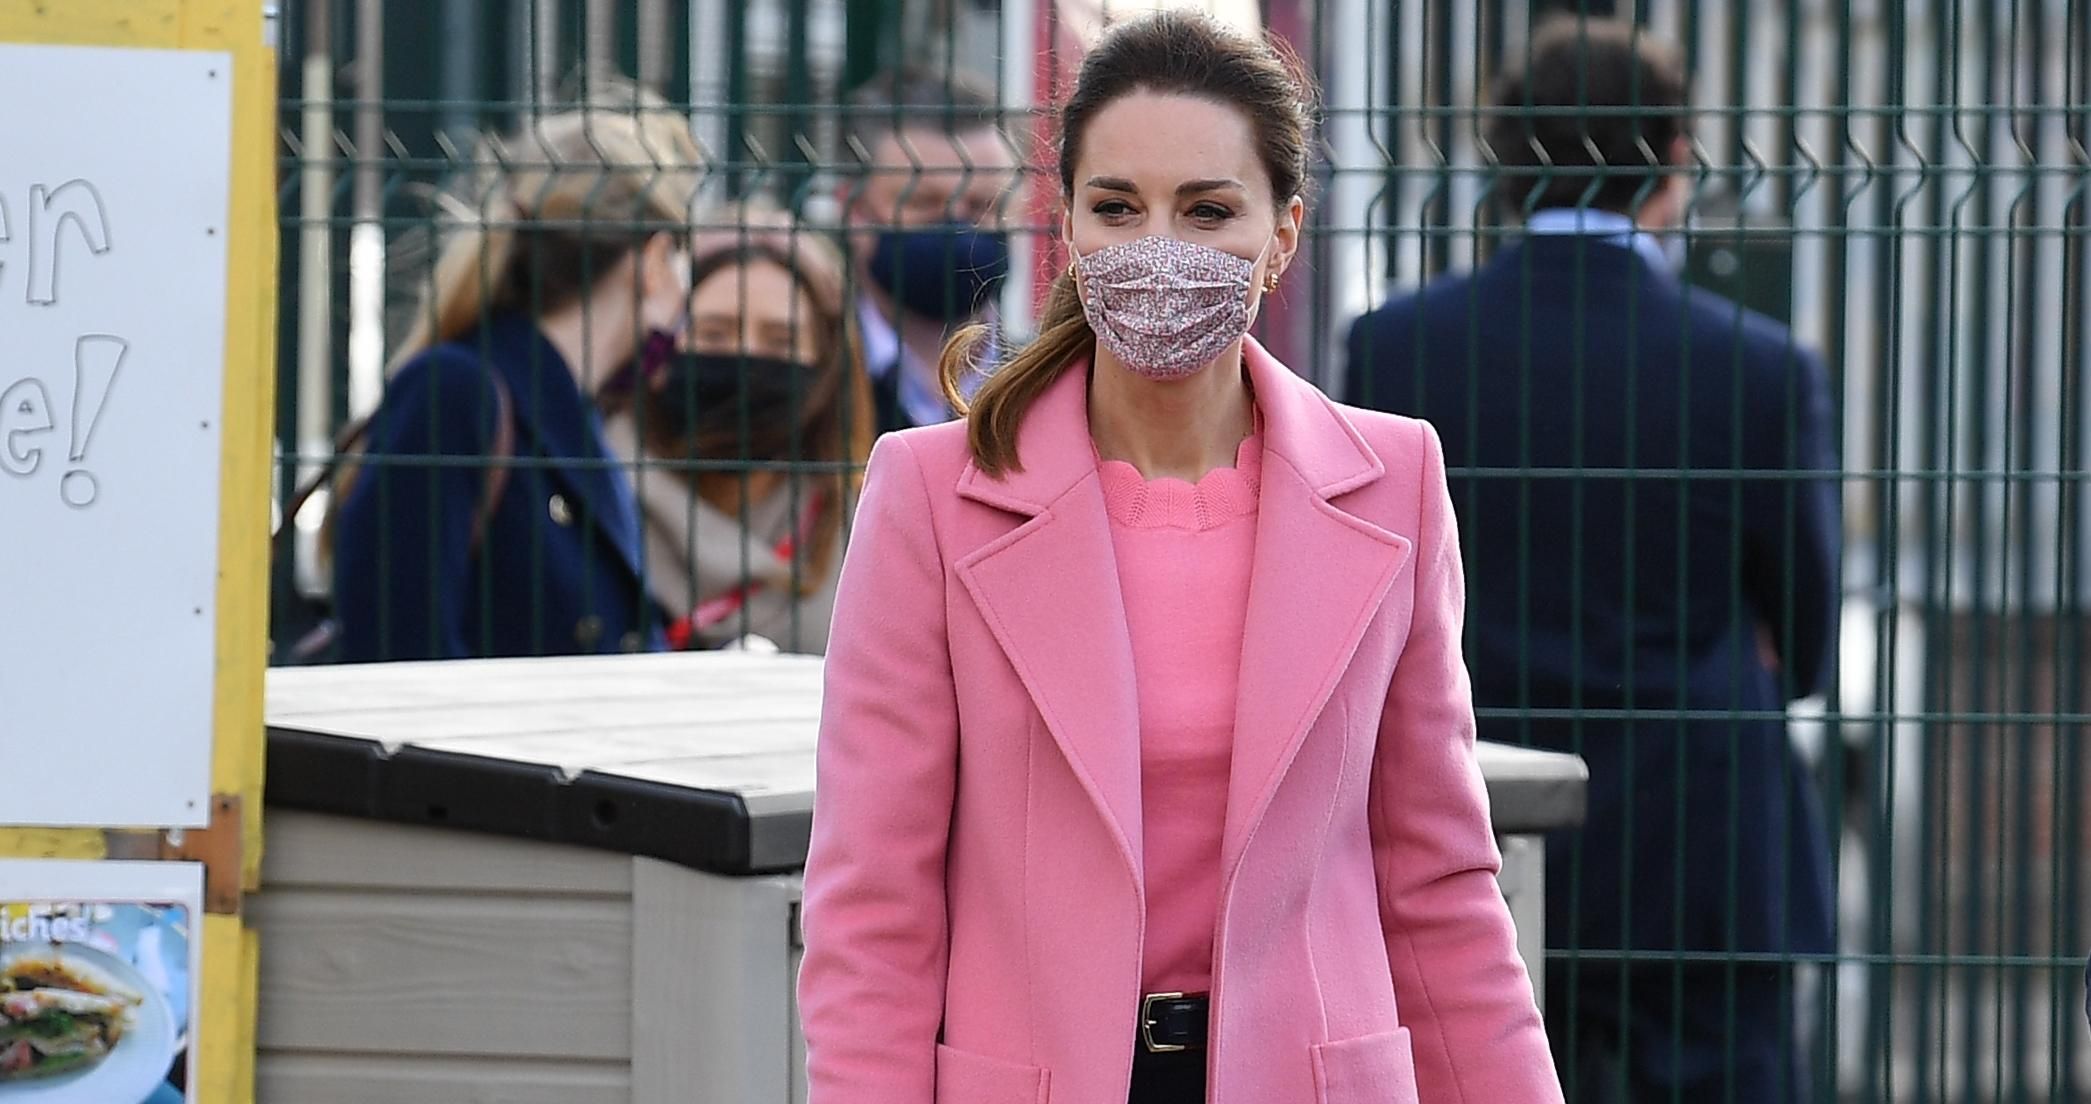 Кейт Миддлтон покорила изящным образом в розовом пальто фото